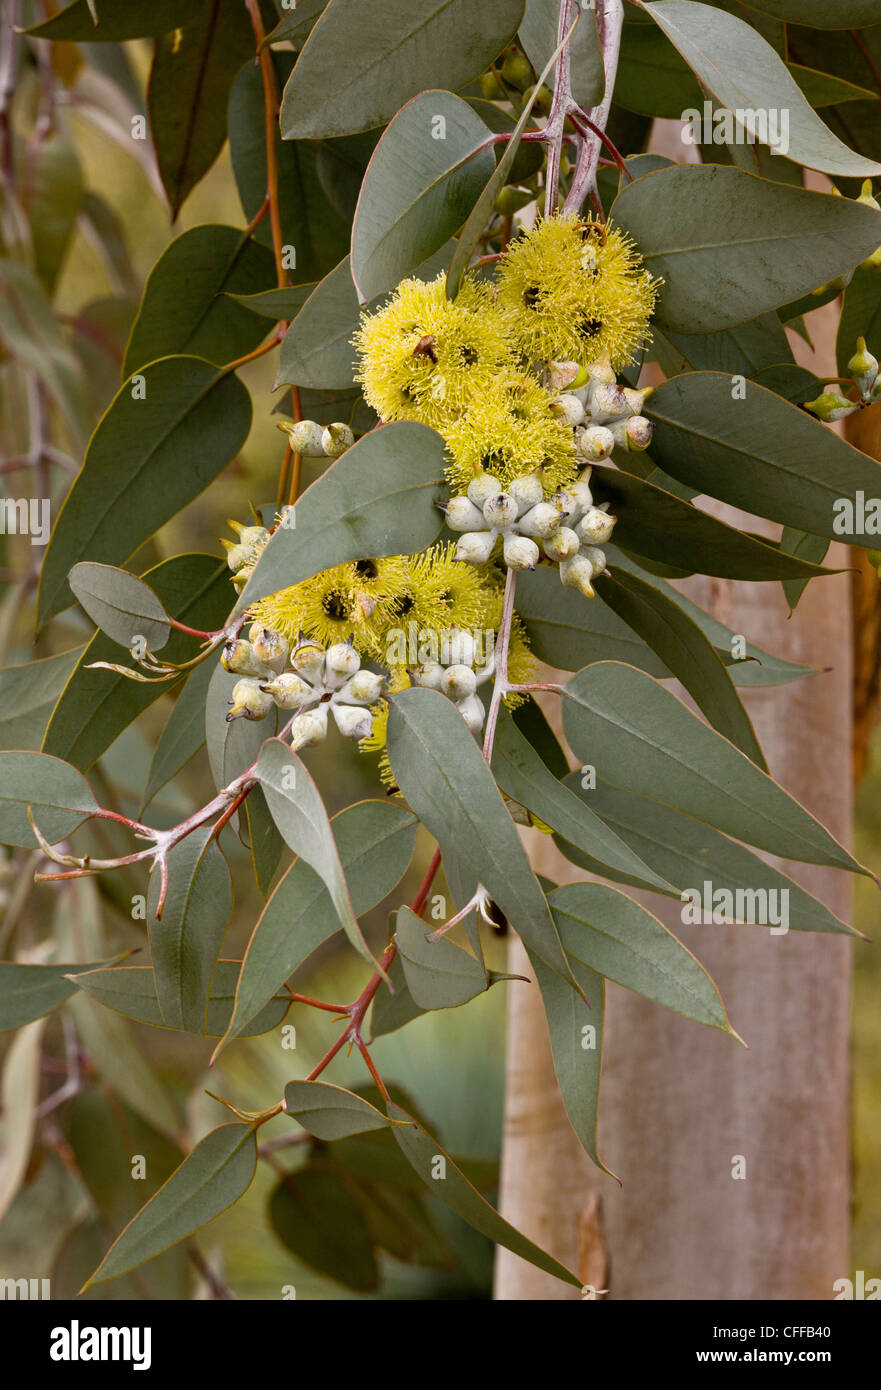 Lemon-flowered mallee, Lemon-flowered Gum, Woodward's blackbutt, Eucalyptus woodwardii in flower. Western Australian endemic. Stock Photo